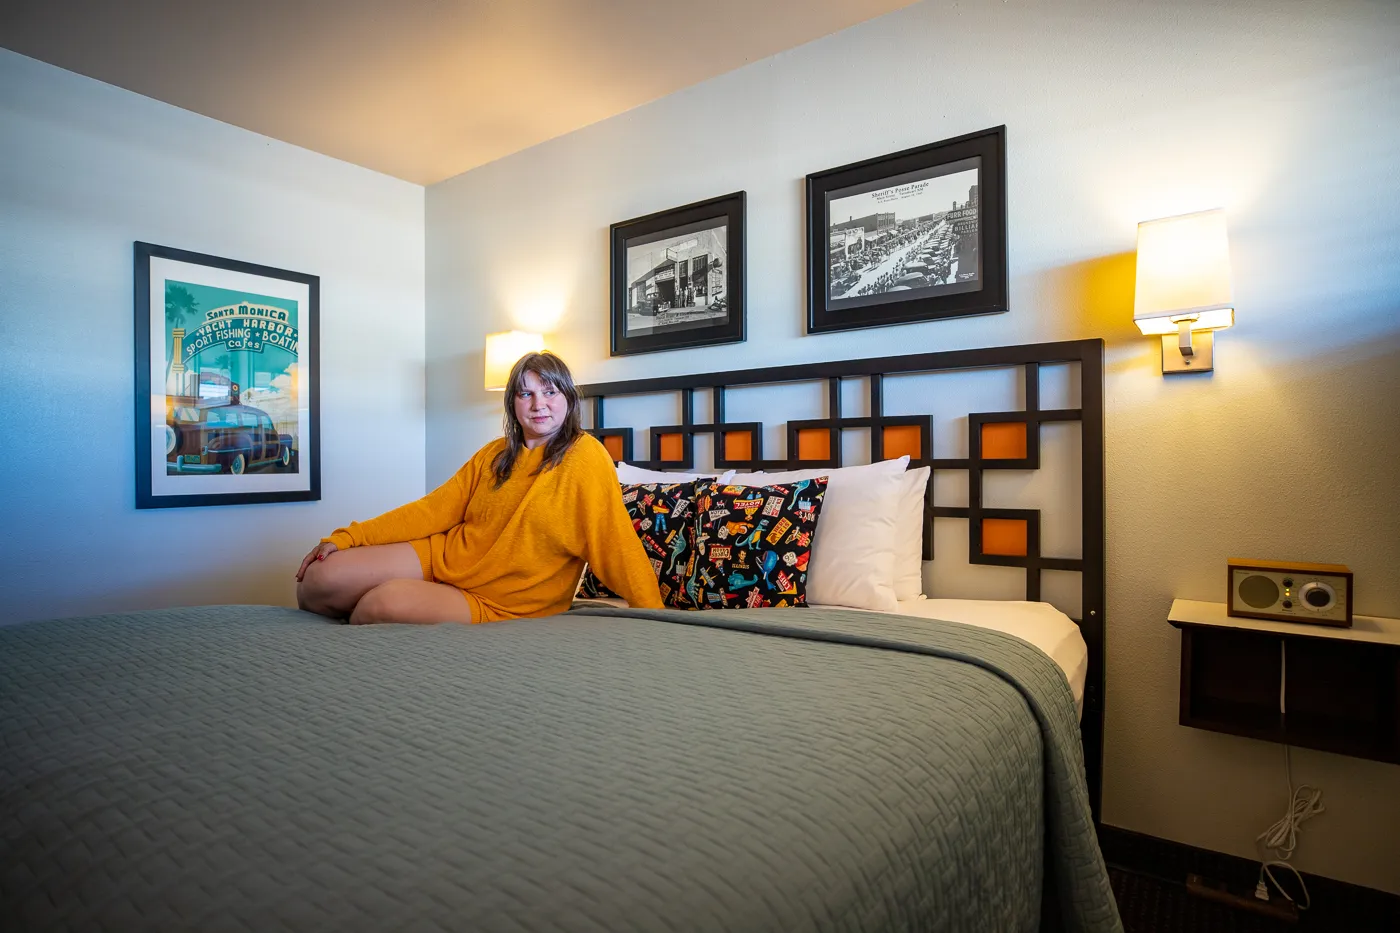 Hotel Room at Motel Safari in Tucumcari, New Mexico (Route 66 Motel)